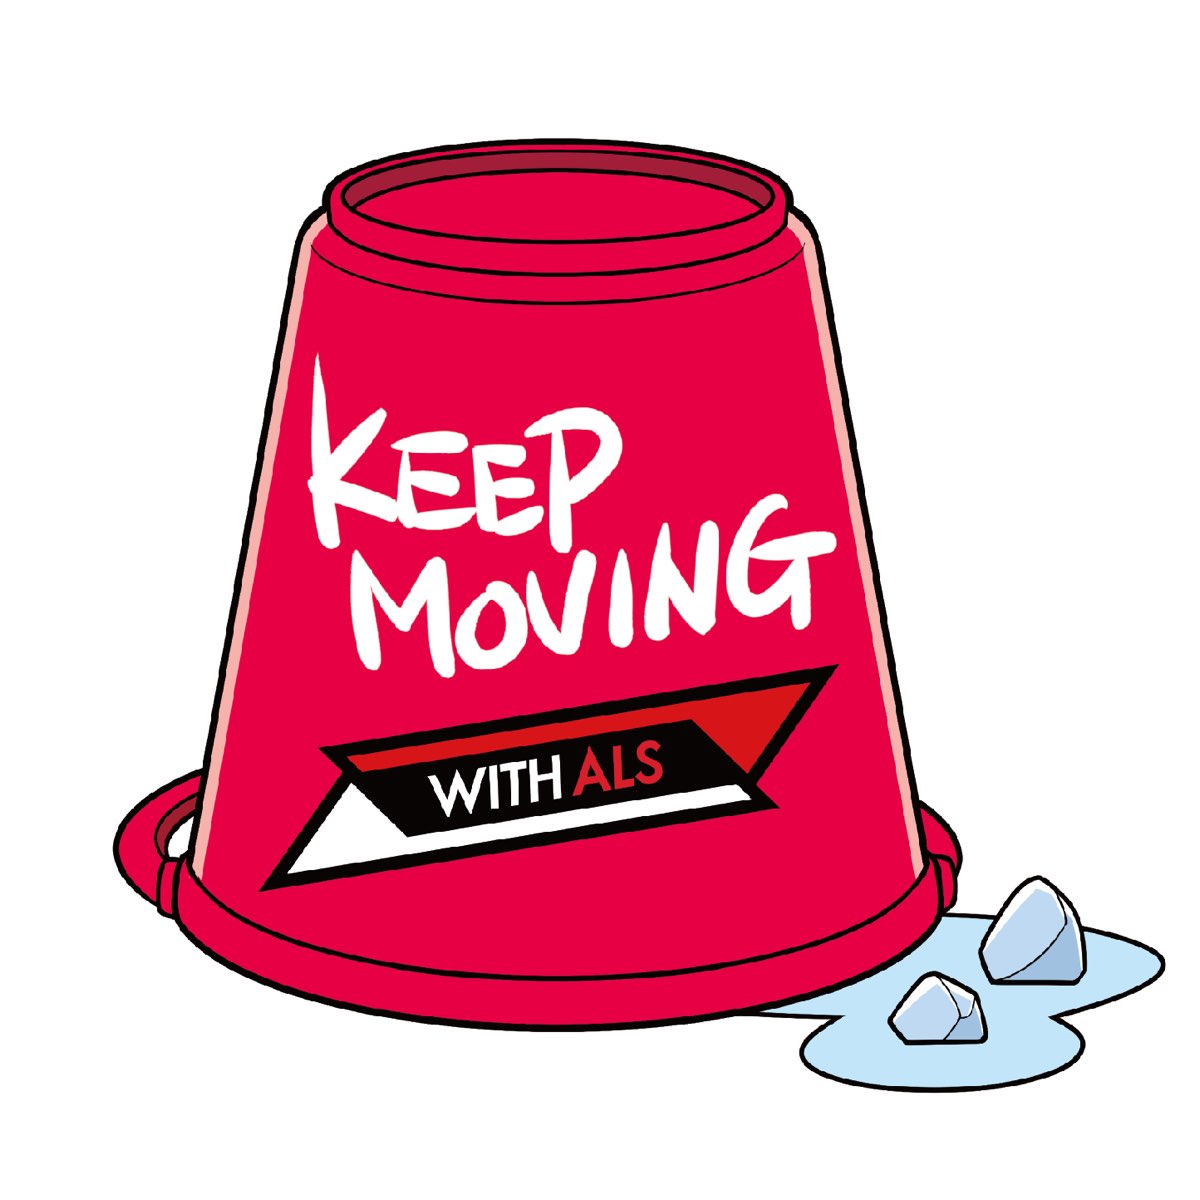 Keep moving. Yay Baby. Keep on moving kastuvas feat. Emie. Kastuvas emie keep